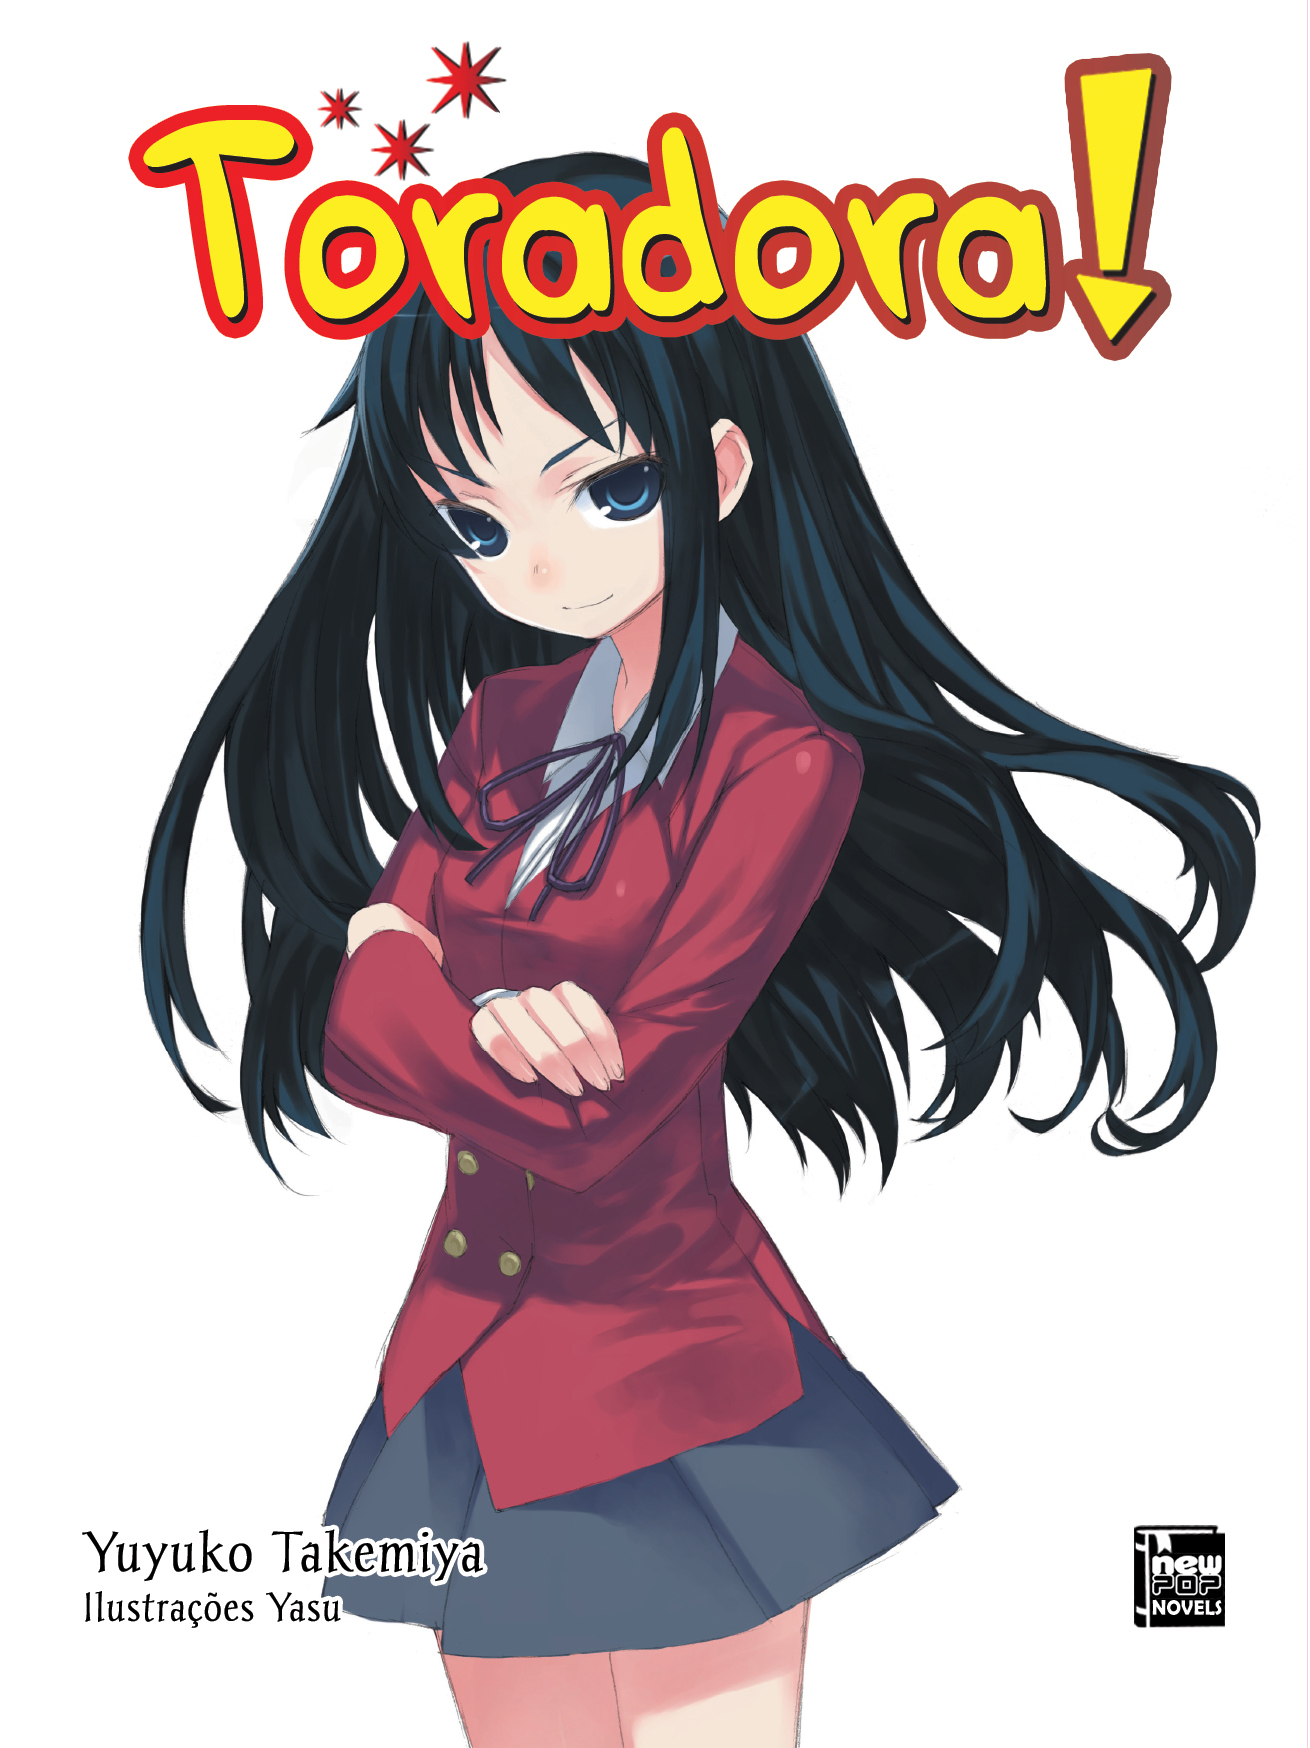 Anime de Toradora estreia na Netflix Brasil dia 1º de Agosto